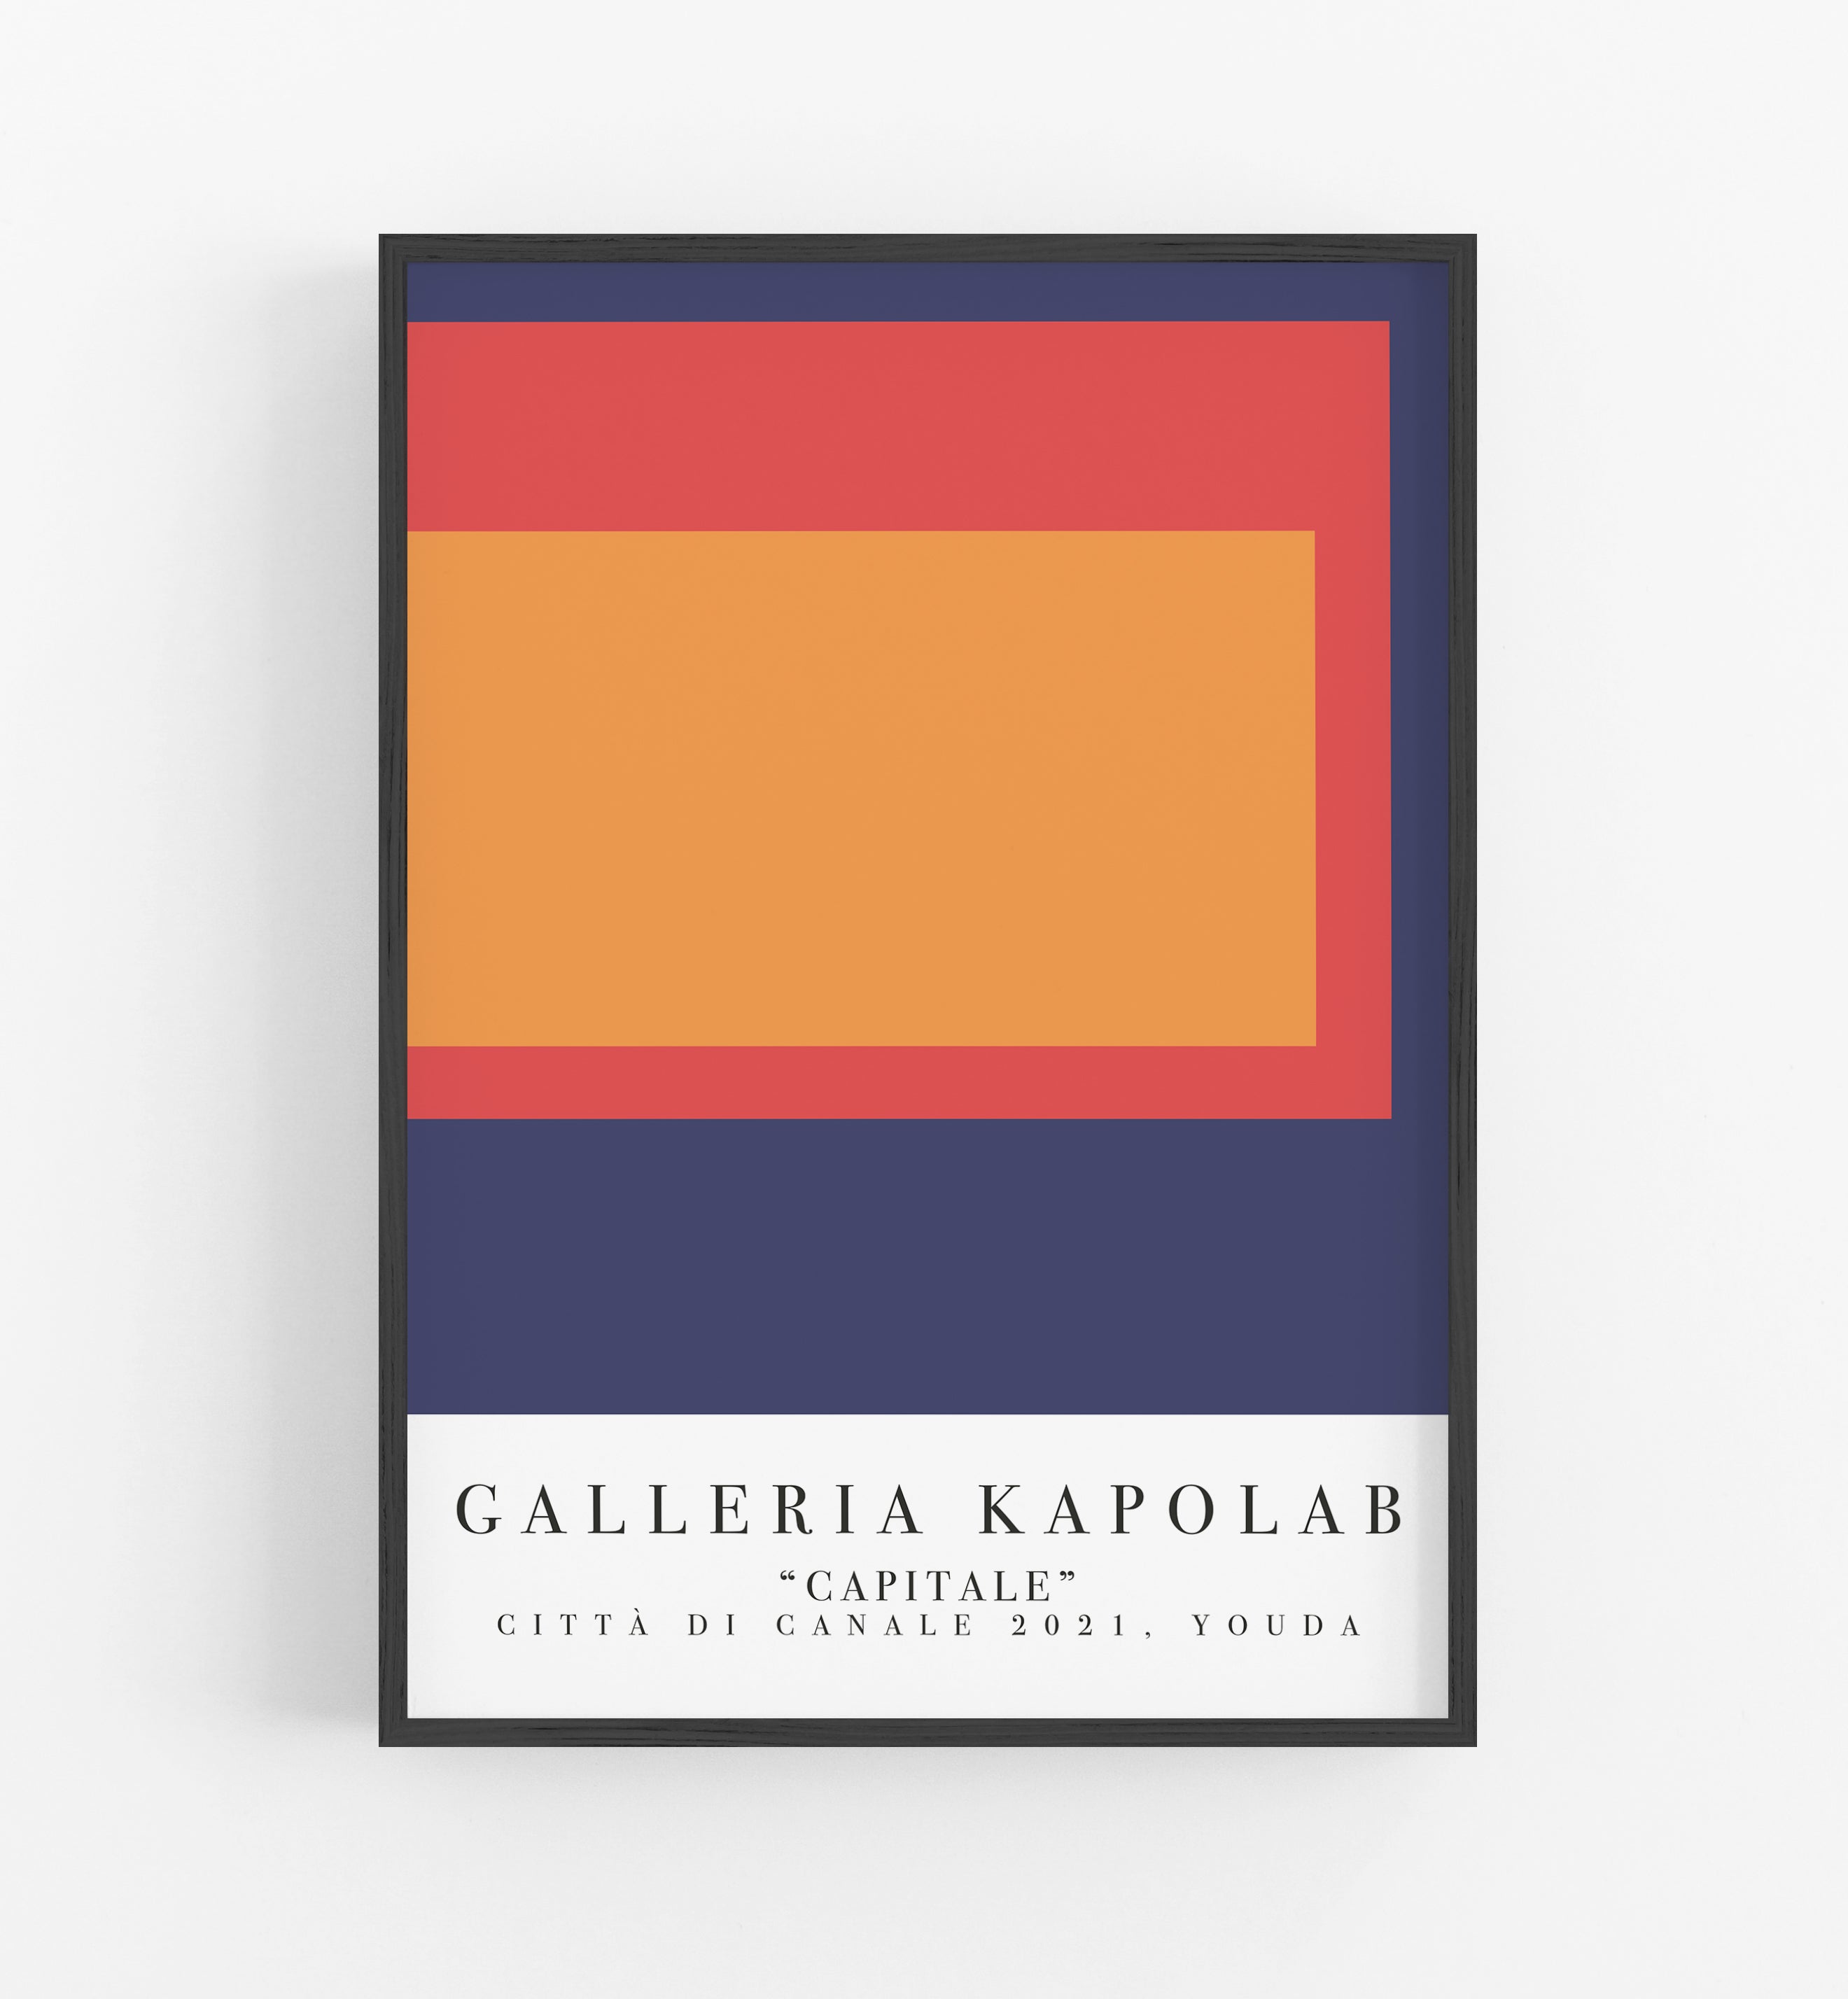 Galleria Kapolab Capitale